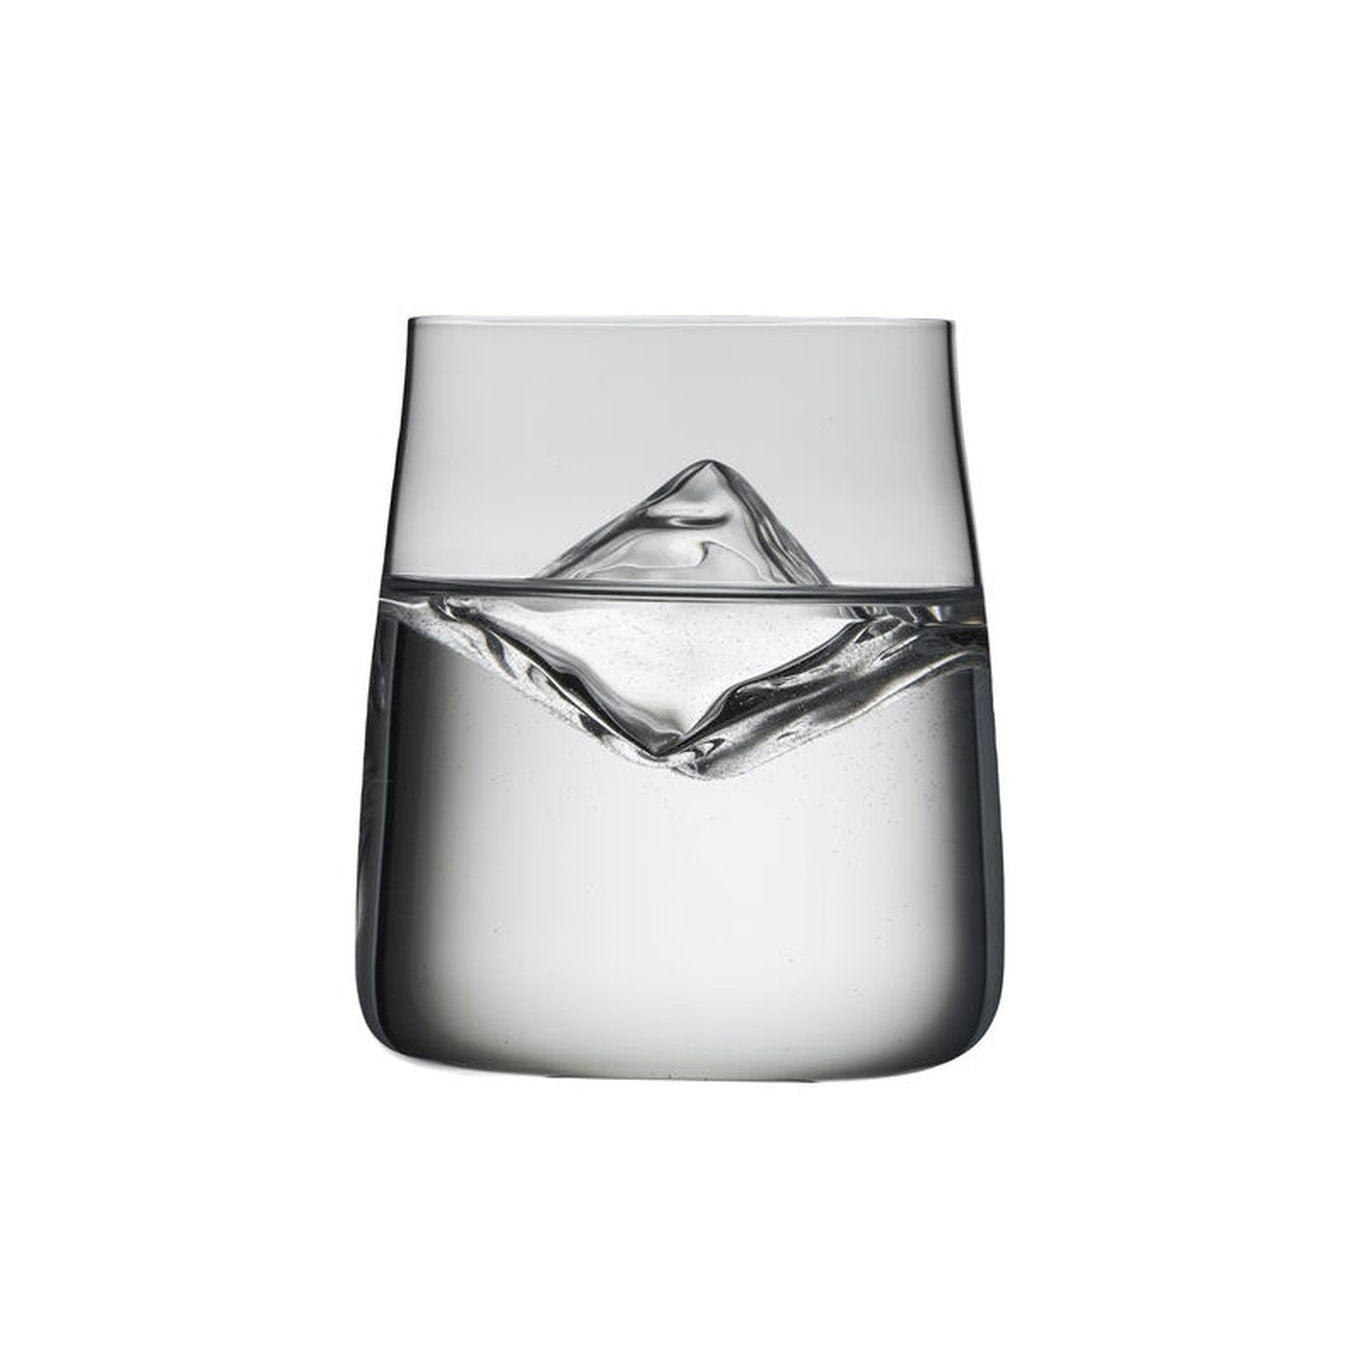 Lyngby Glas Zero Krystal Water Glass 42 CL, 6 stk.